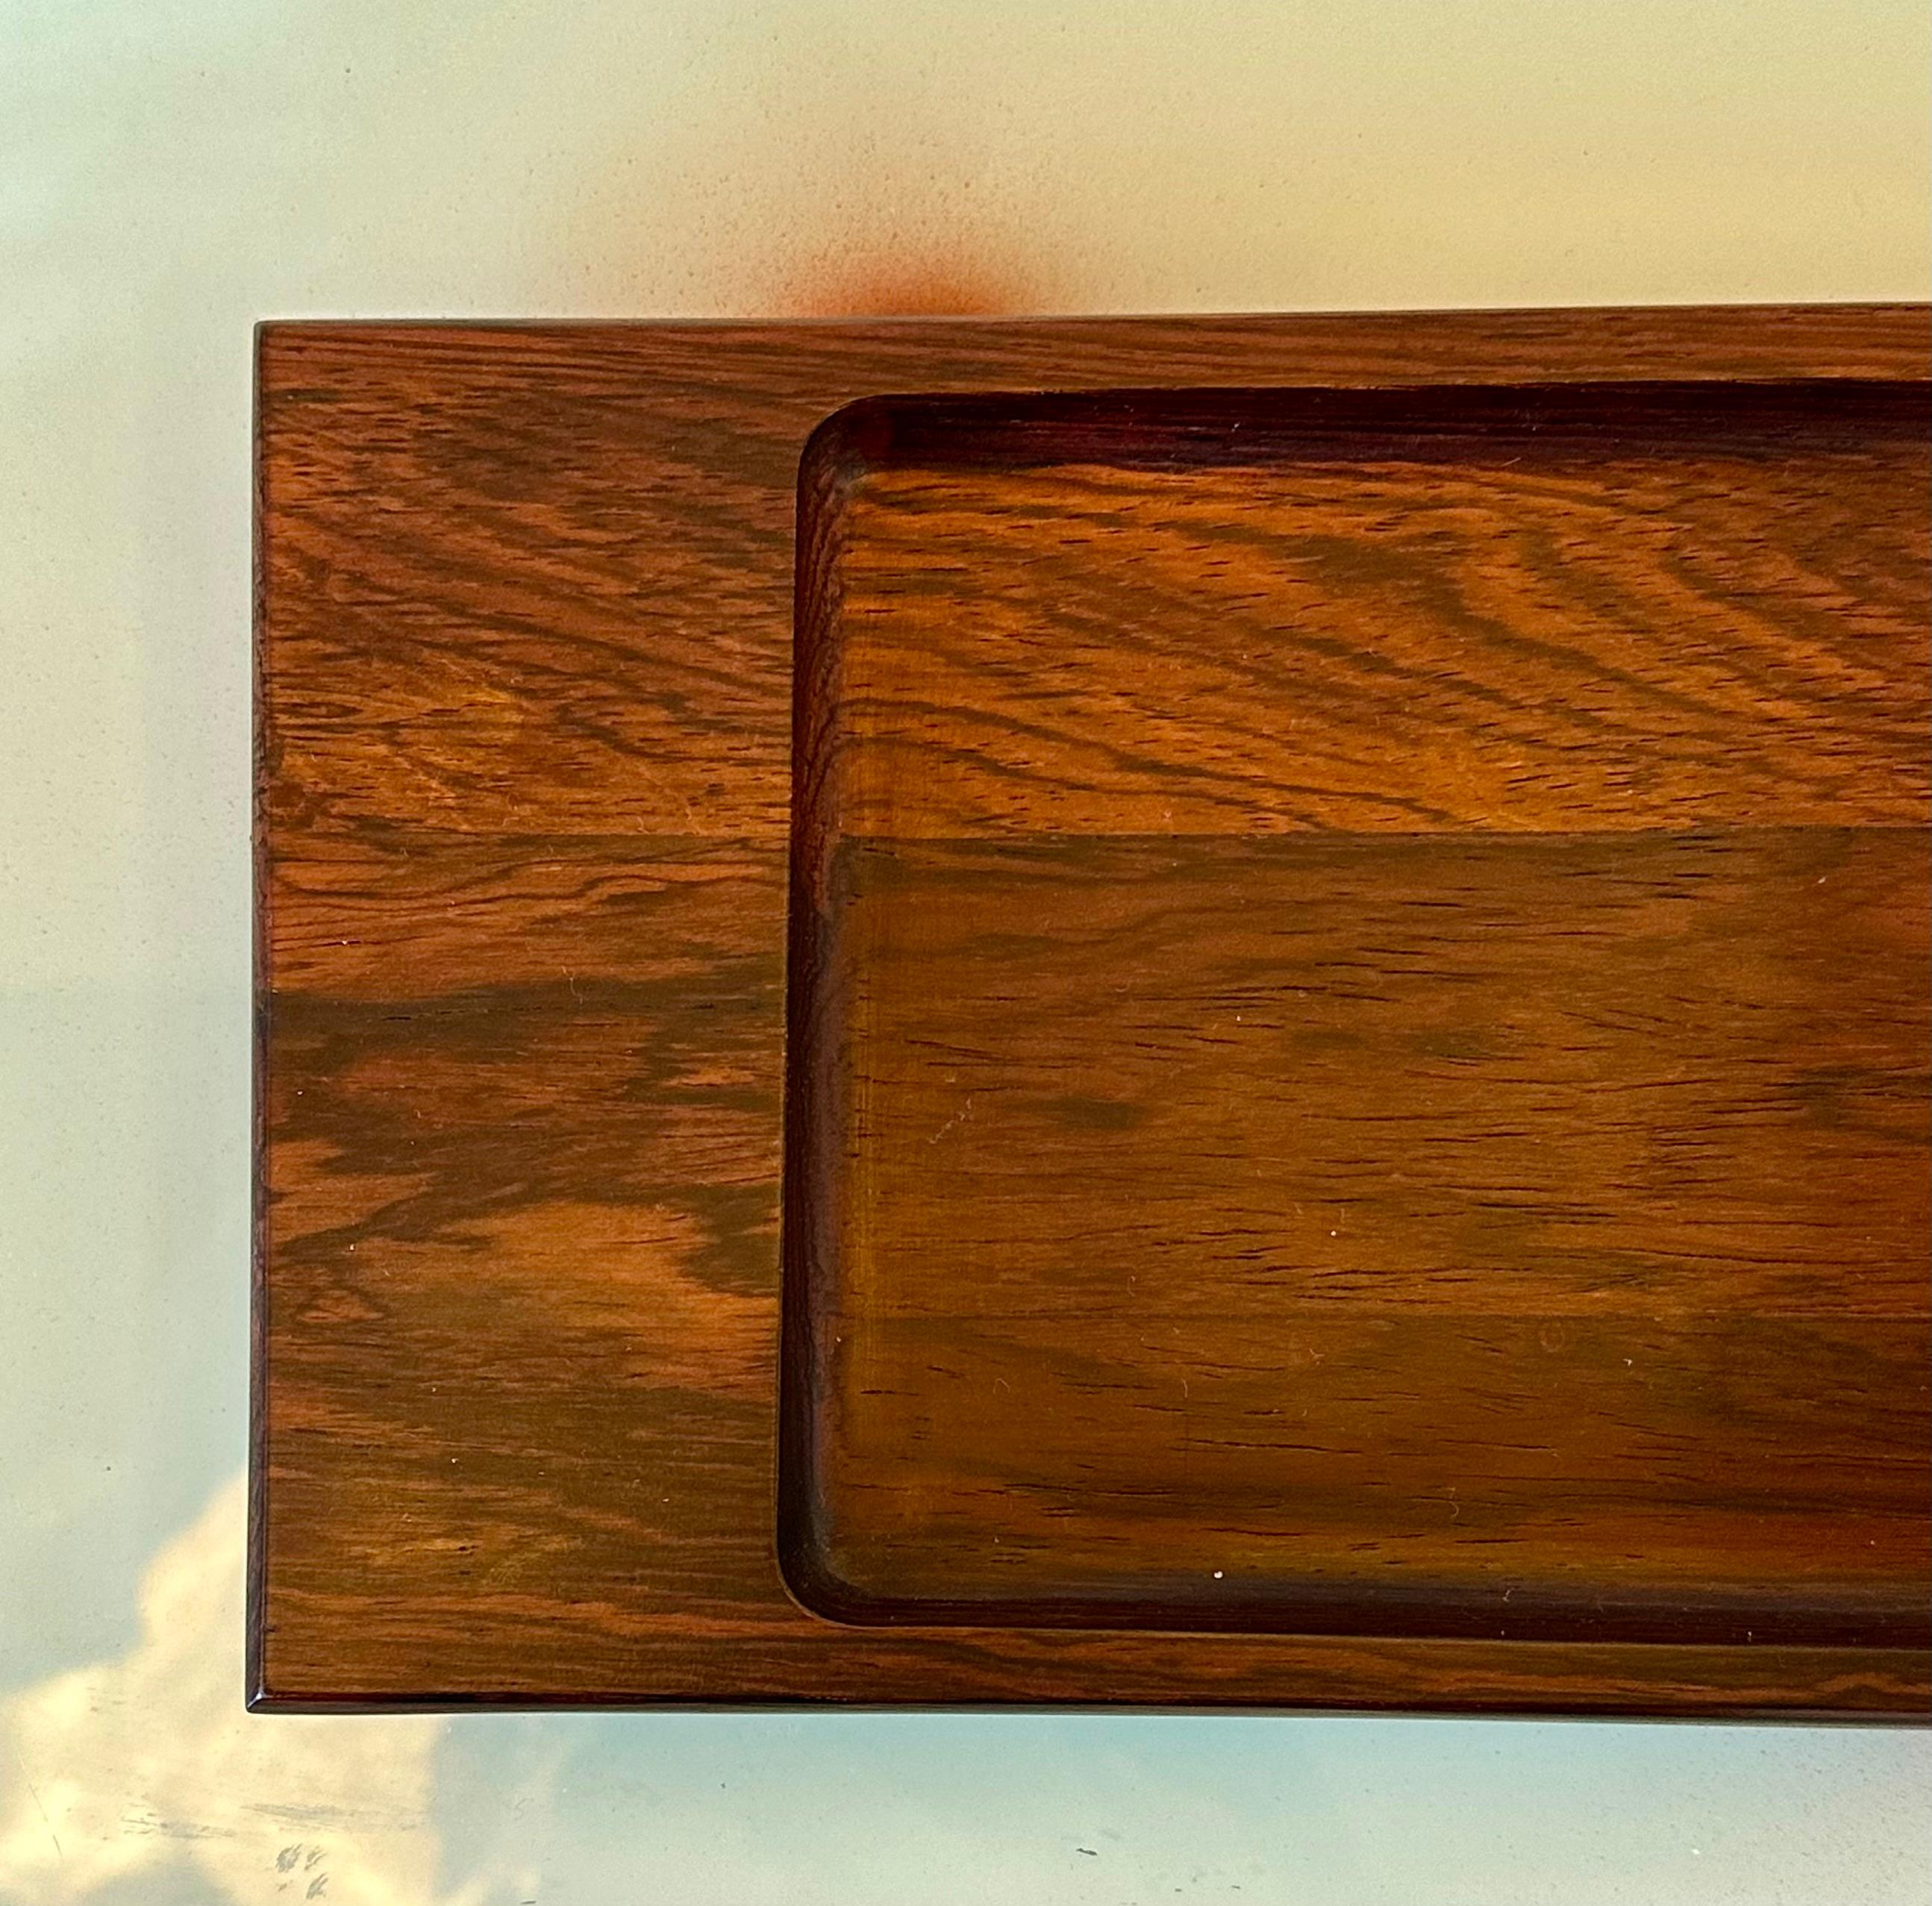 Ce plateau rectangulaire du modèle 304, réalisé par Jean Gillon, date d'environ 1960. Fabriqué en bois massif, ce plateau a des dimensions de 2 x 35 x 12 centimètres. L'authenticité de cette création est soulignée par la présence du Label Wood Art